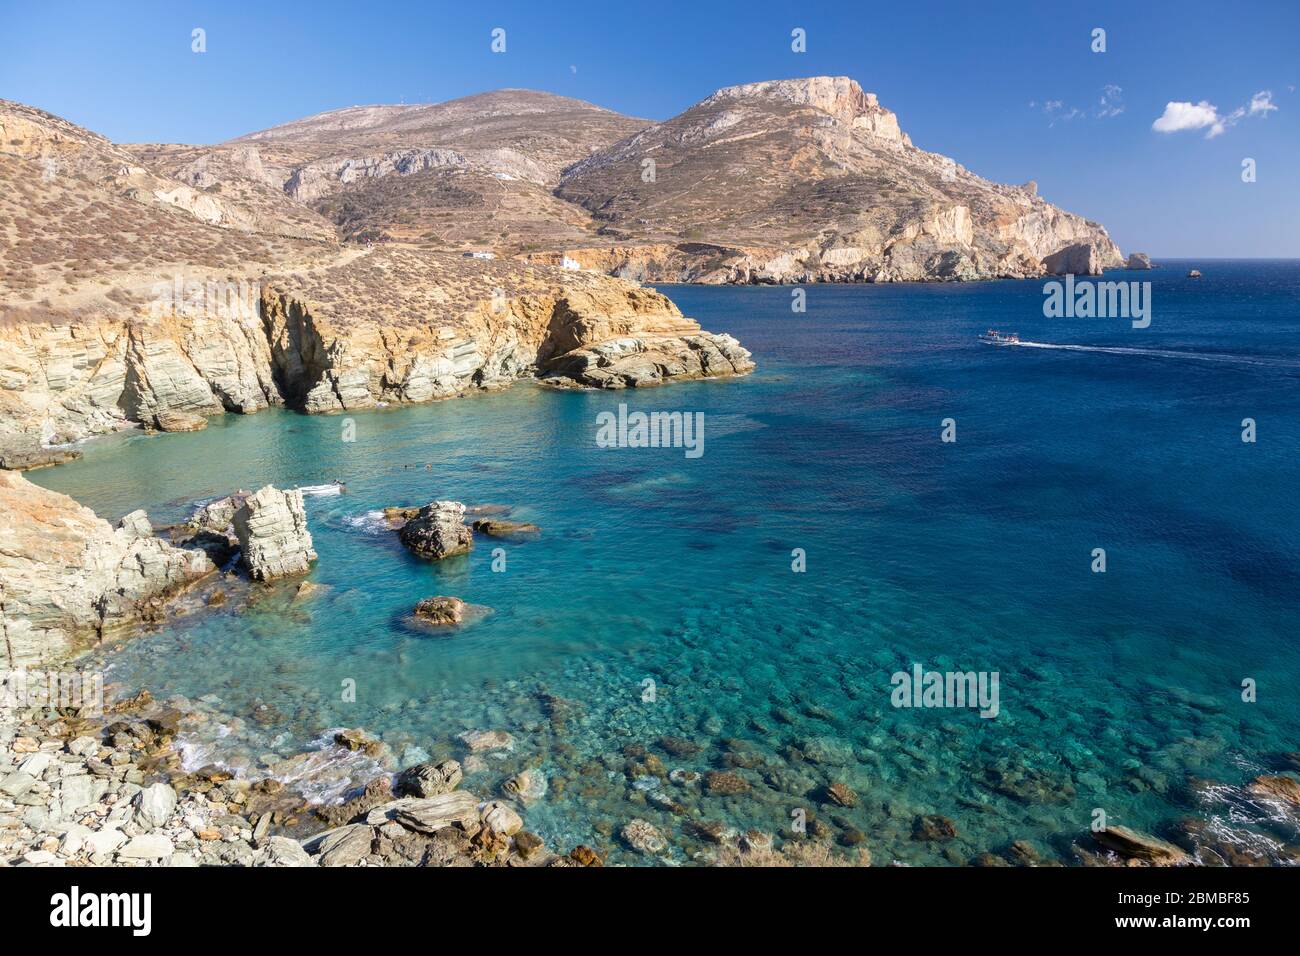 Vue sur le littoral et la mer près de Livadaki Beach, Folegandros, Cyclades, Grèce Banque D'Images